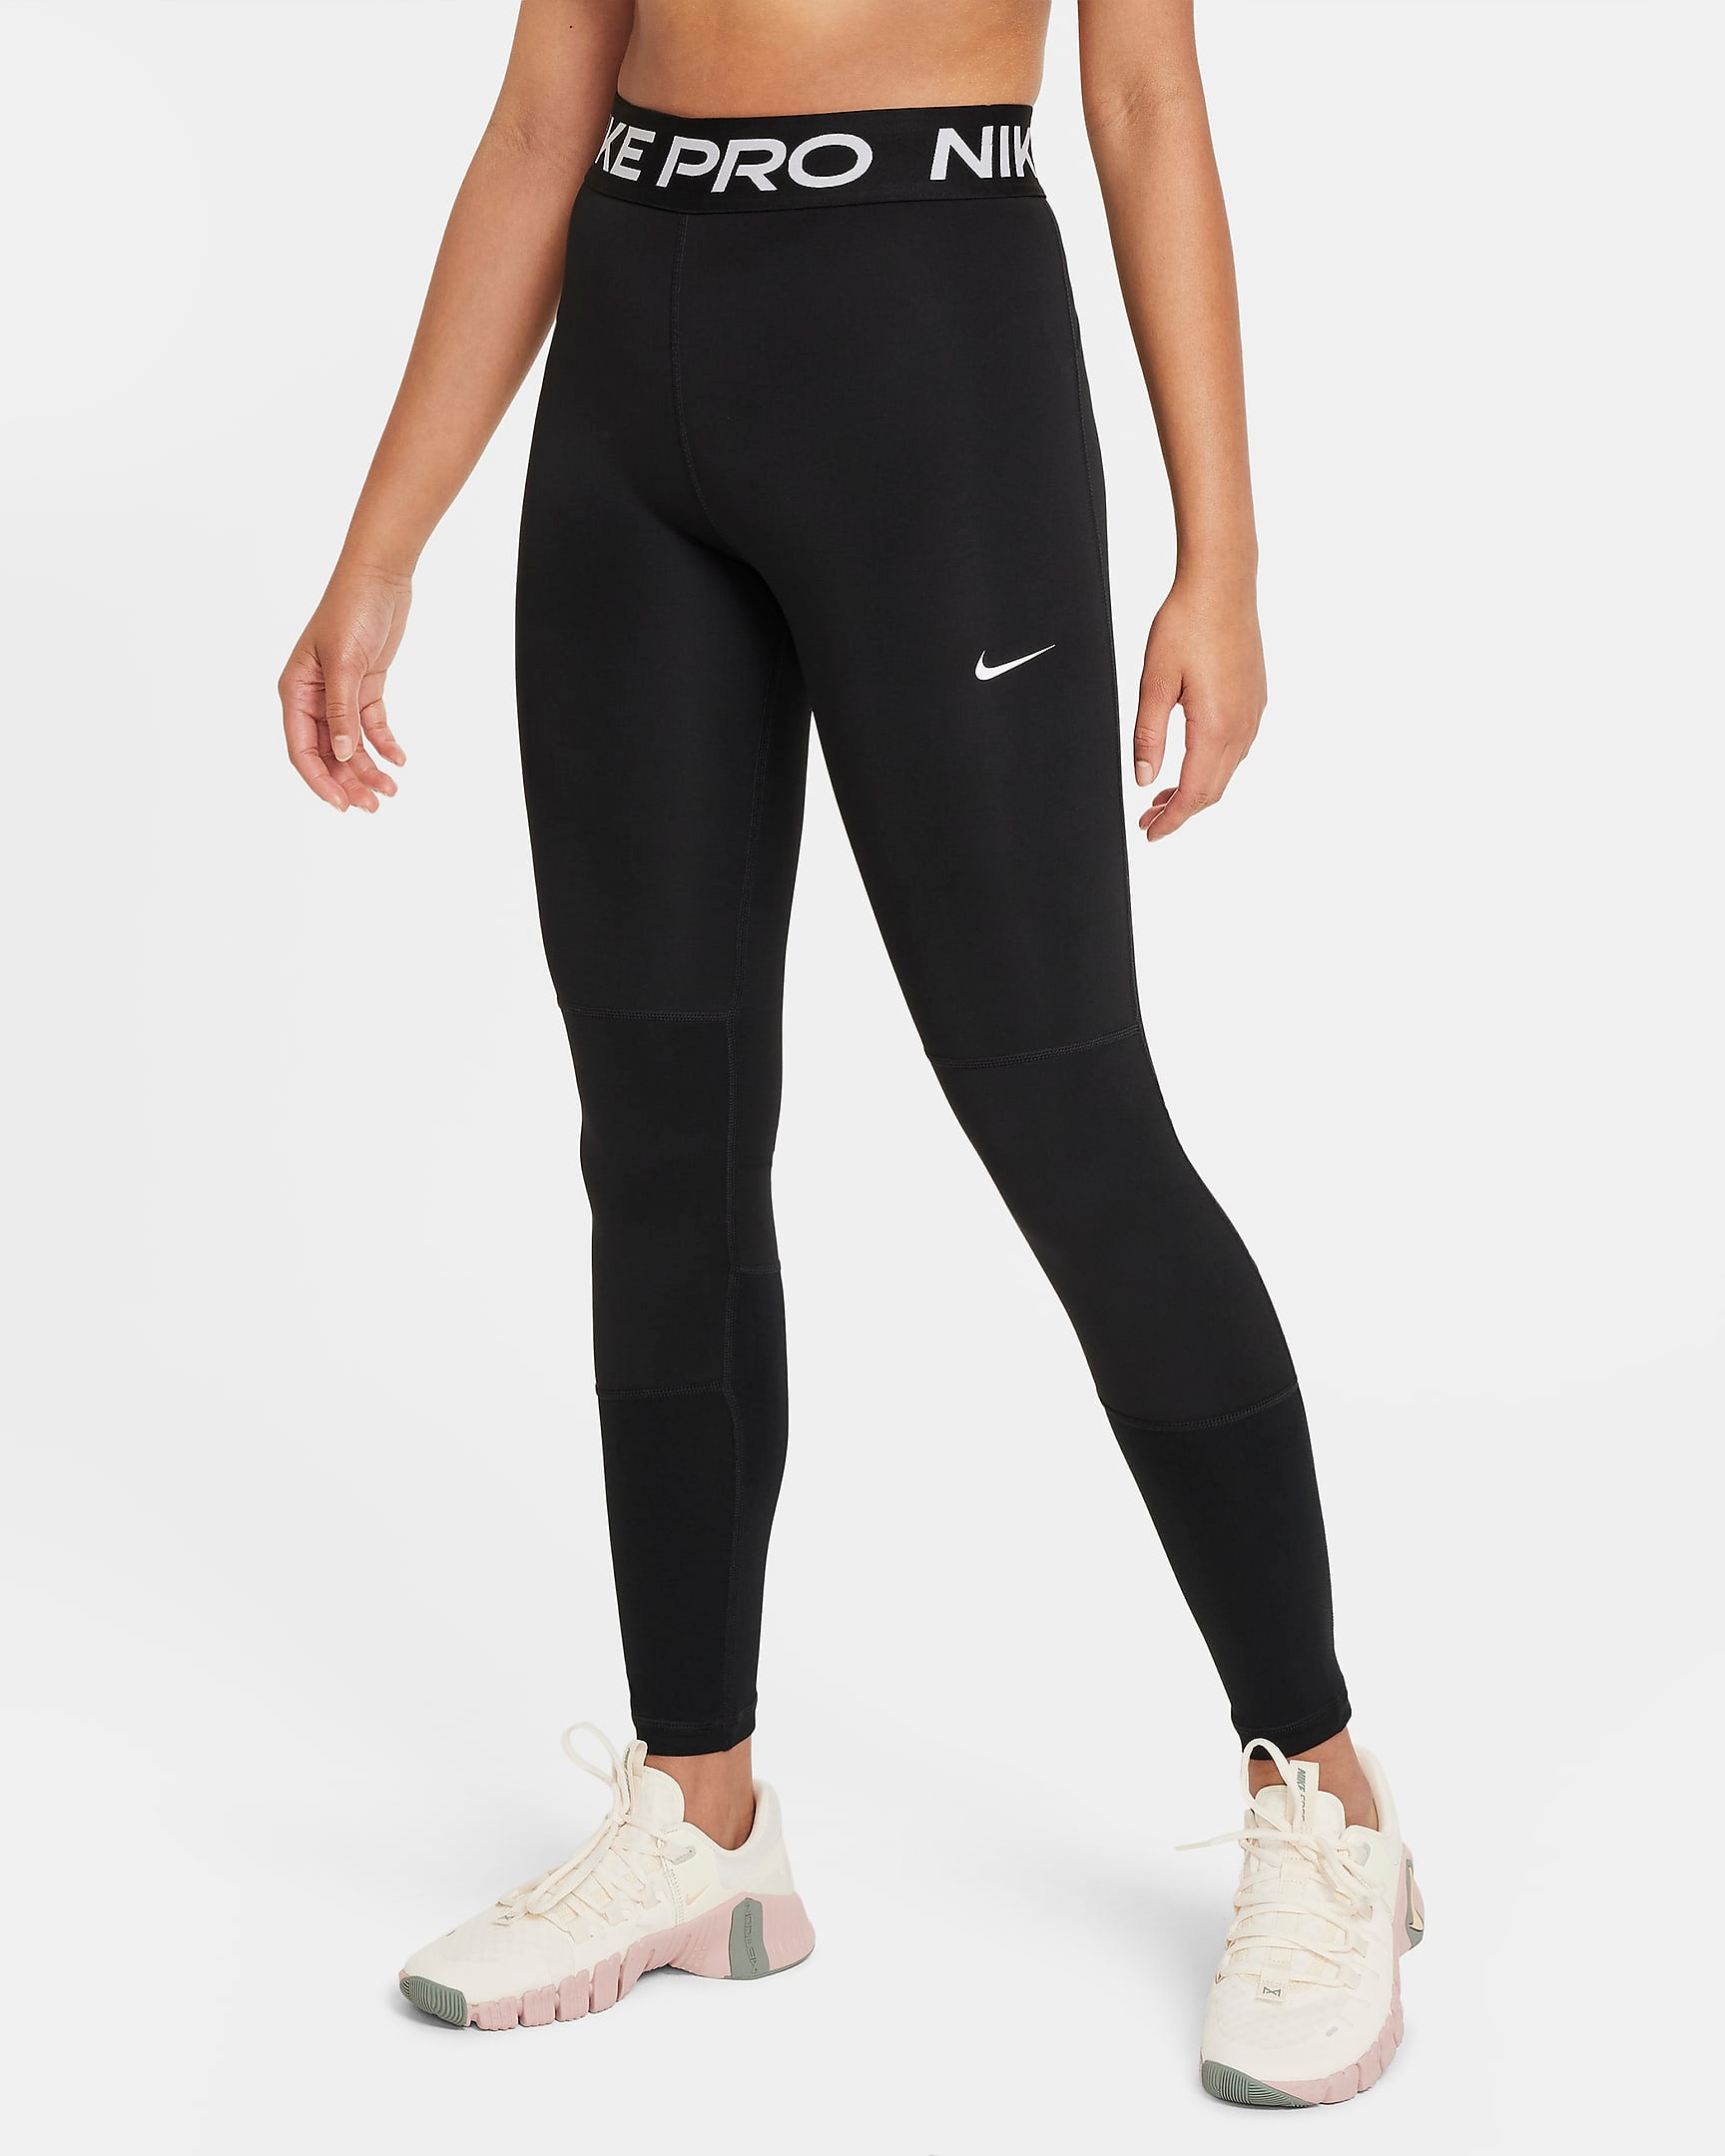 Girls Nike Pro Leggings - DA1028